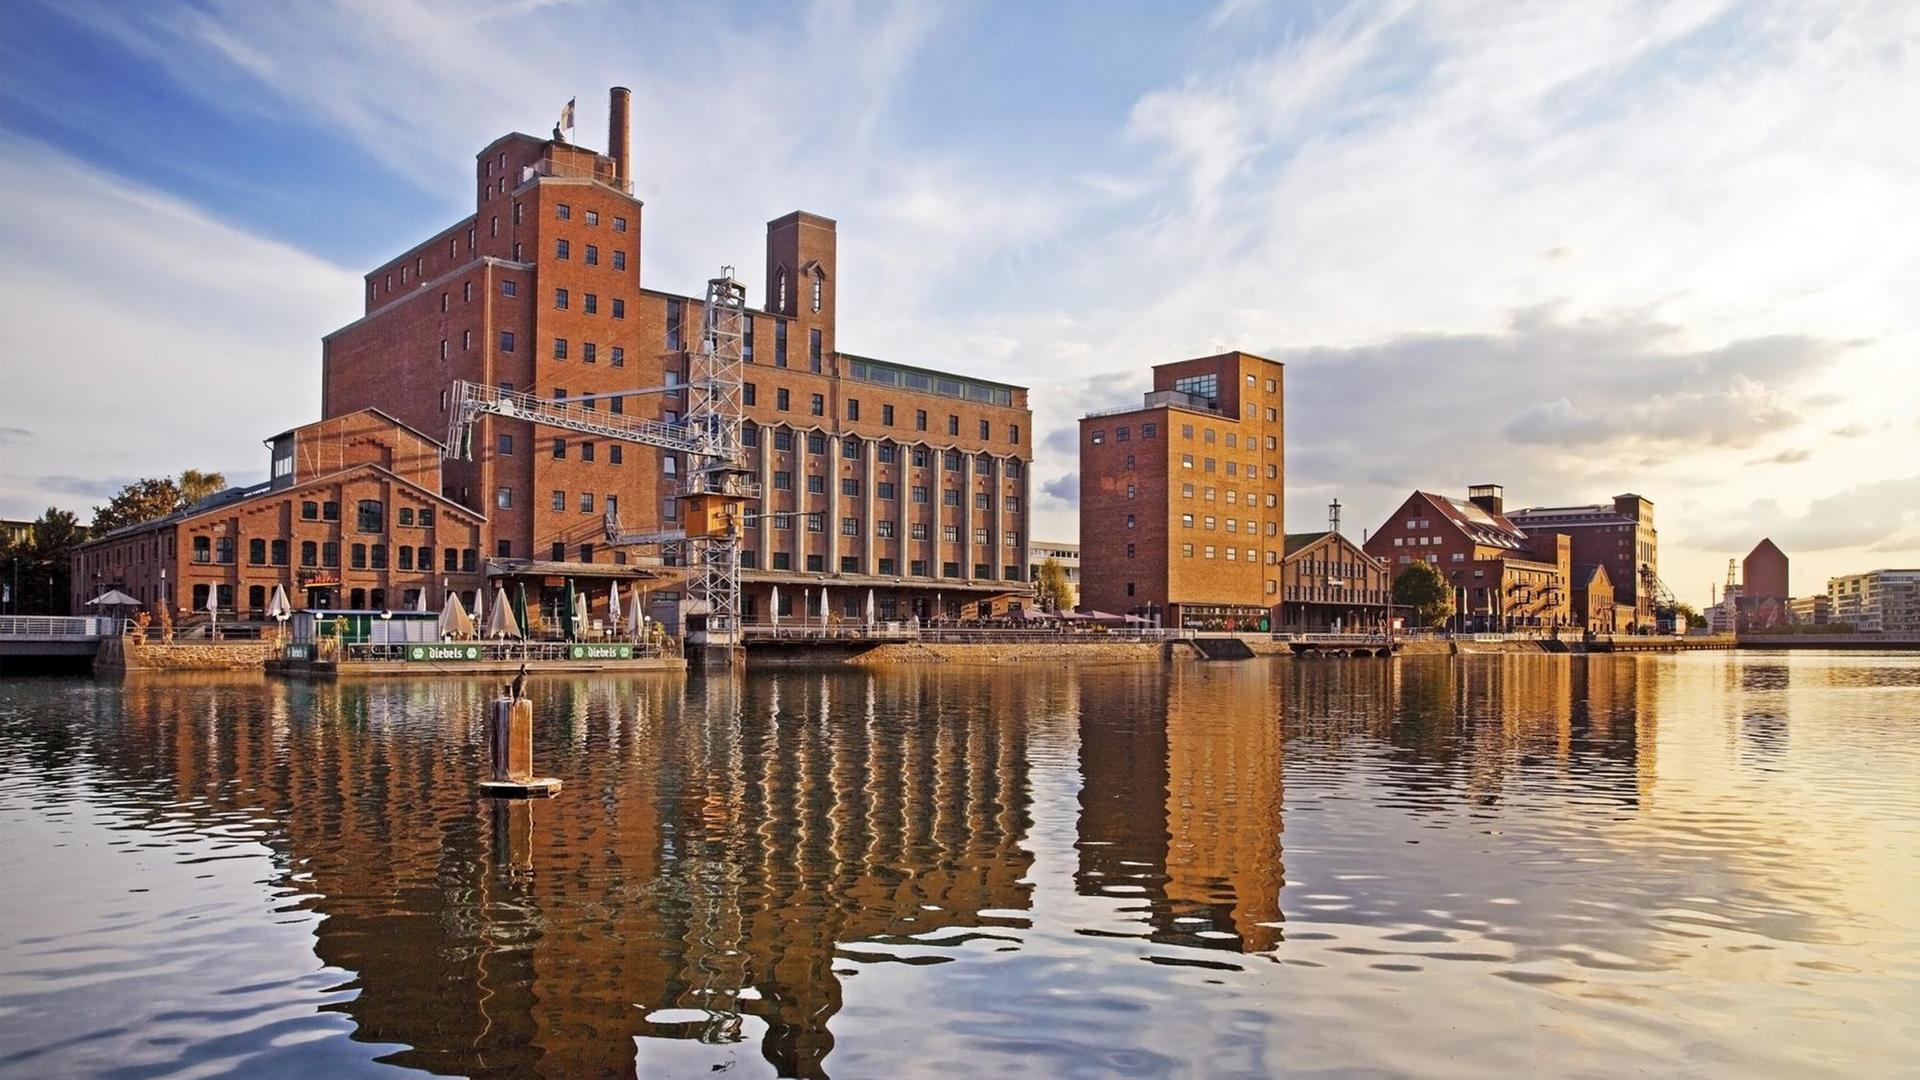 Die Werhahn-Mühle in Duisburg. Eine großes Backsteingebäude in einem Hafen.